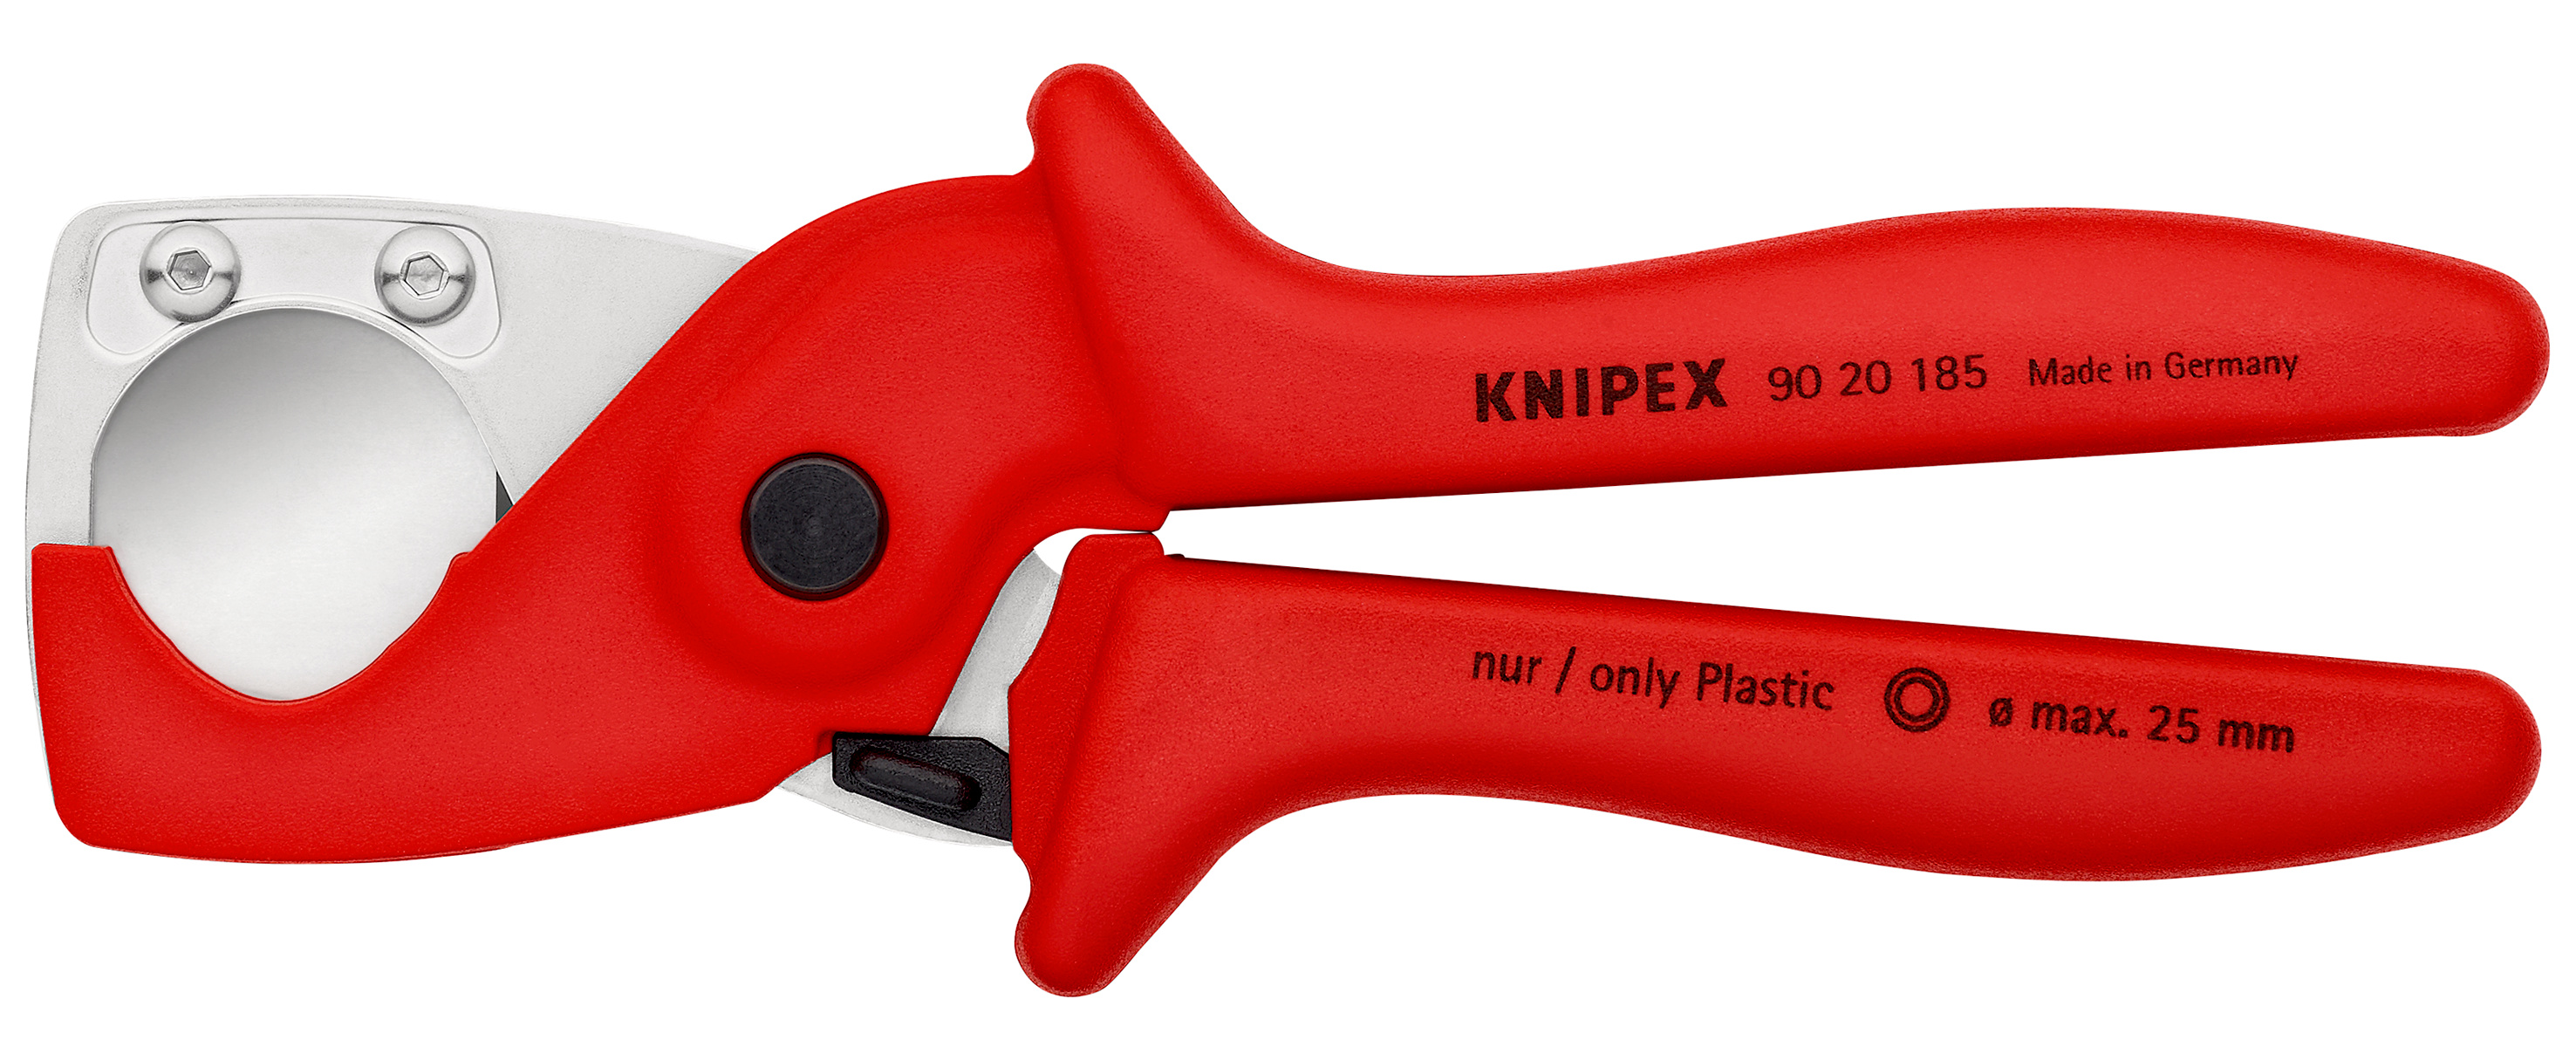 Knipex KPX9020185 Plastic Conduit Pipe Hose Cutter 25mm Diameter 